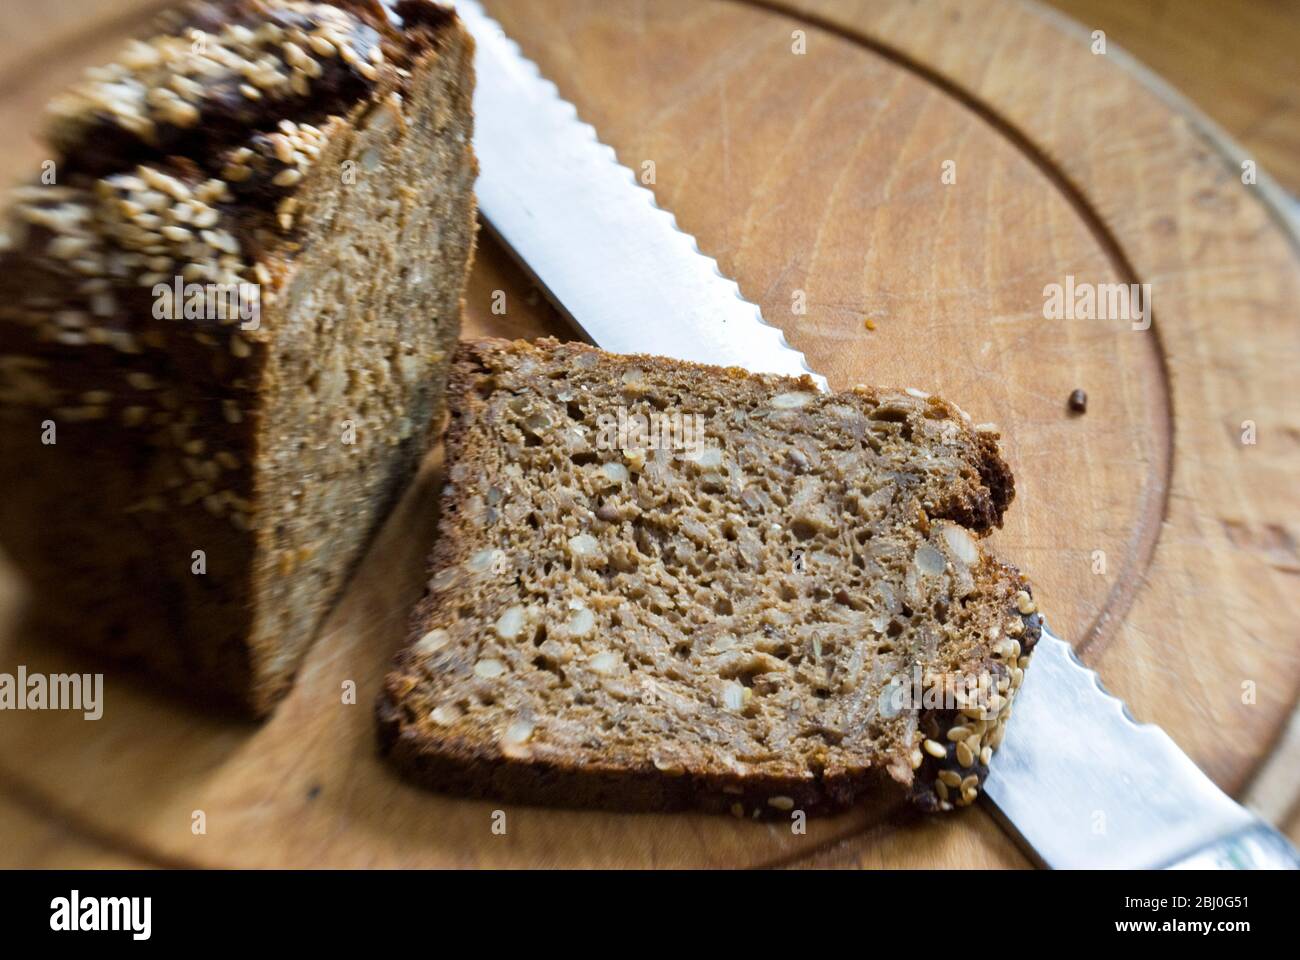 Slice of coarse, Scandinavian style rye bread on wooden bread board. - Stock Photo